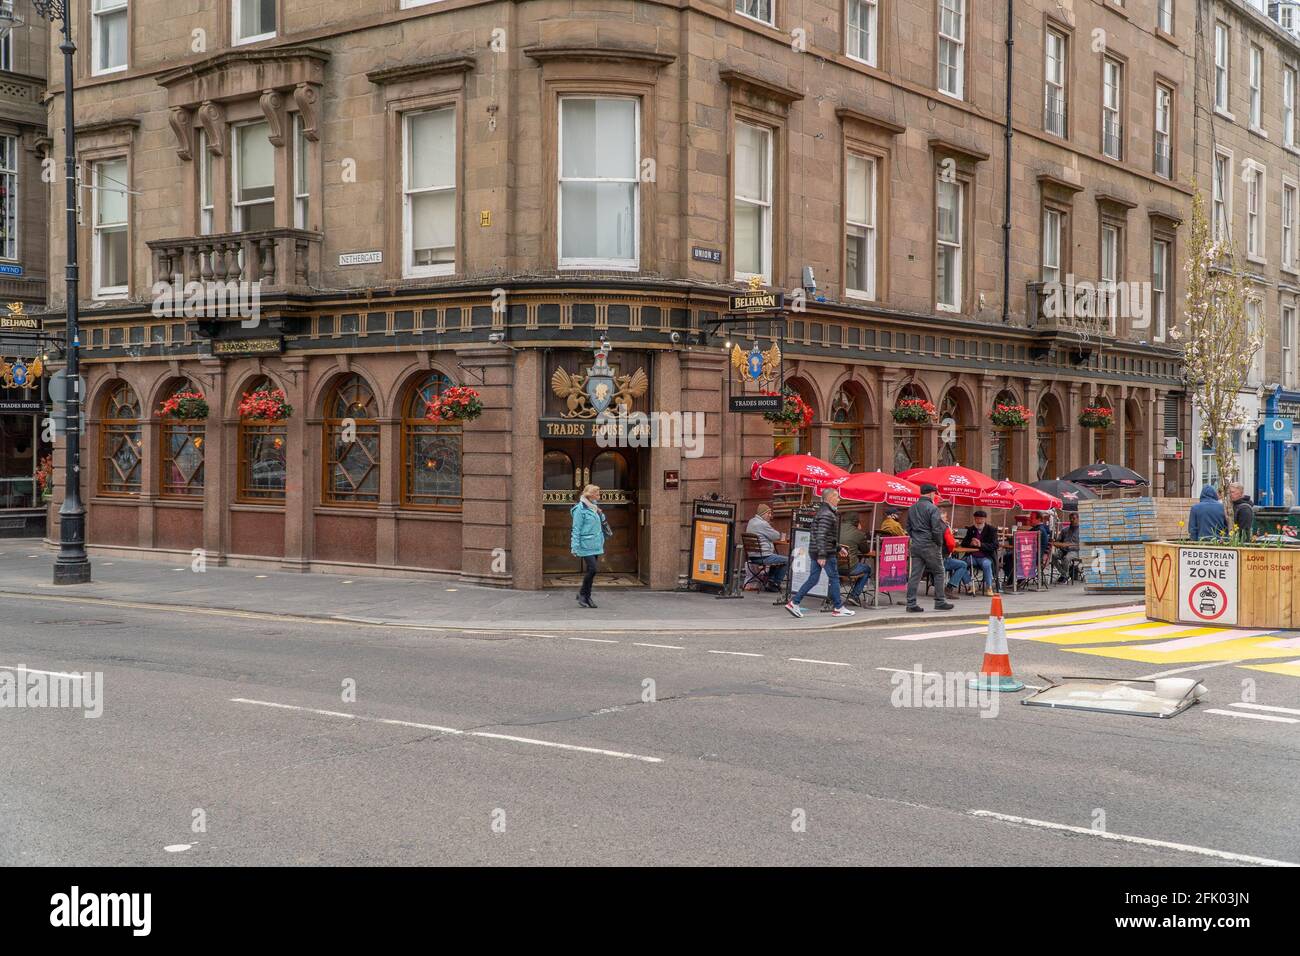 Dundee, Tayside, Schottland 26. April 2021: Pubs mit Biergärten im gesamten Stadtzentrum von Dundee geöffnet, während die schottische Regierung die Sperrungsbeschränkungen lockern, die eine Öffnung der Geschäfte und eine gewisse Normalität für das Leben der Menschen mit sich bringen. Stockfoto